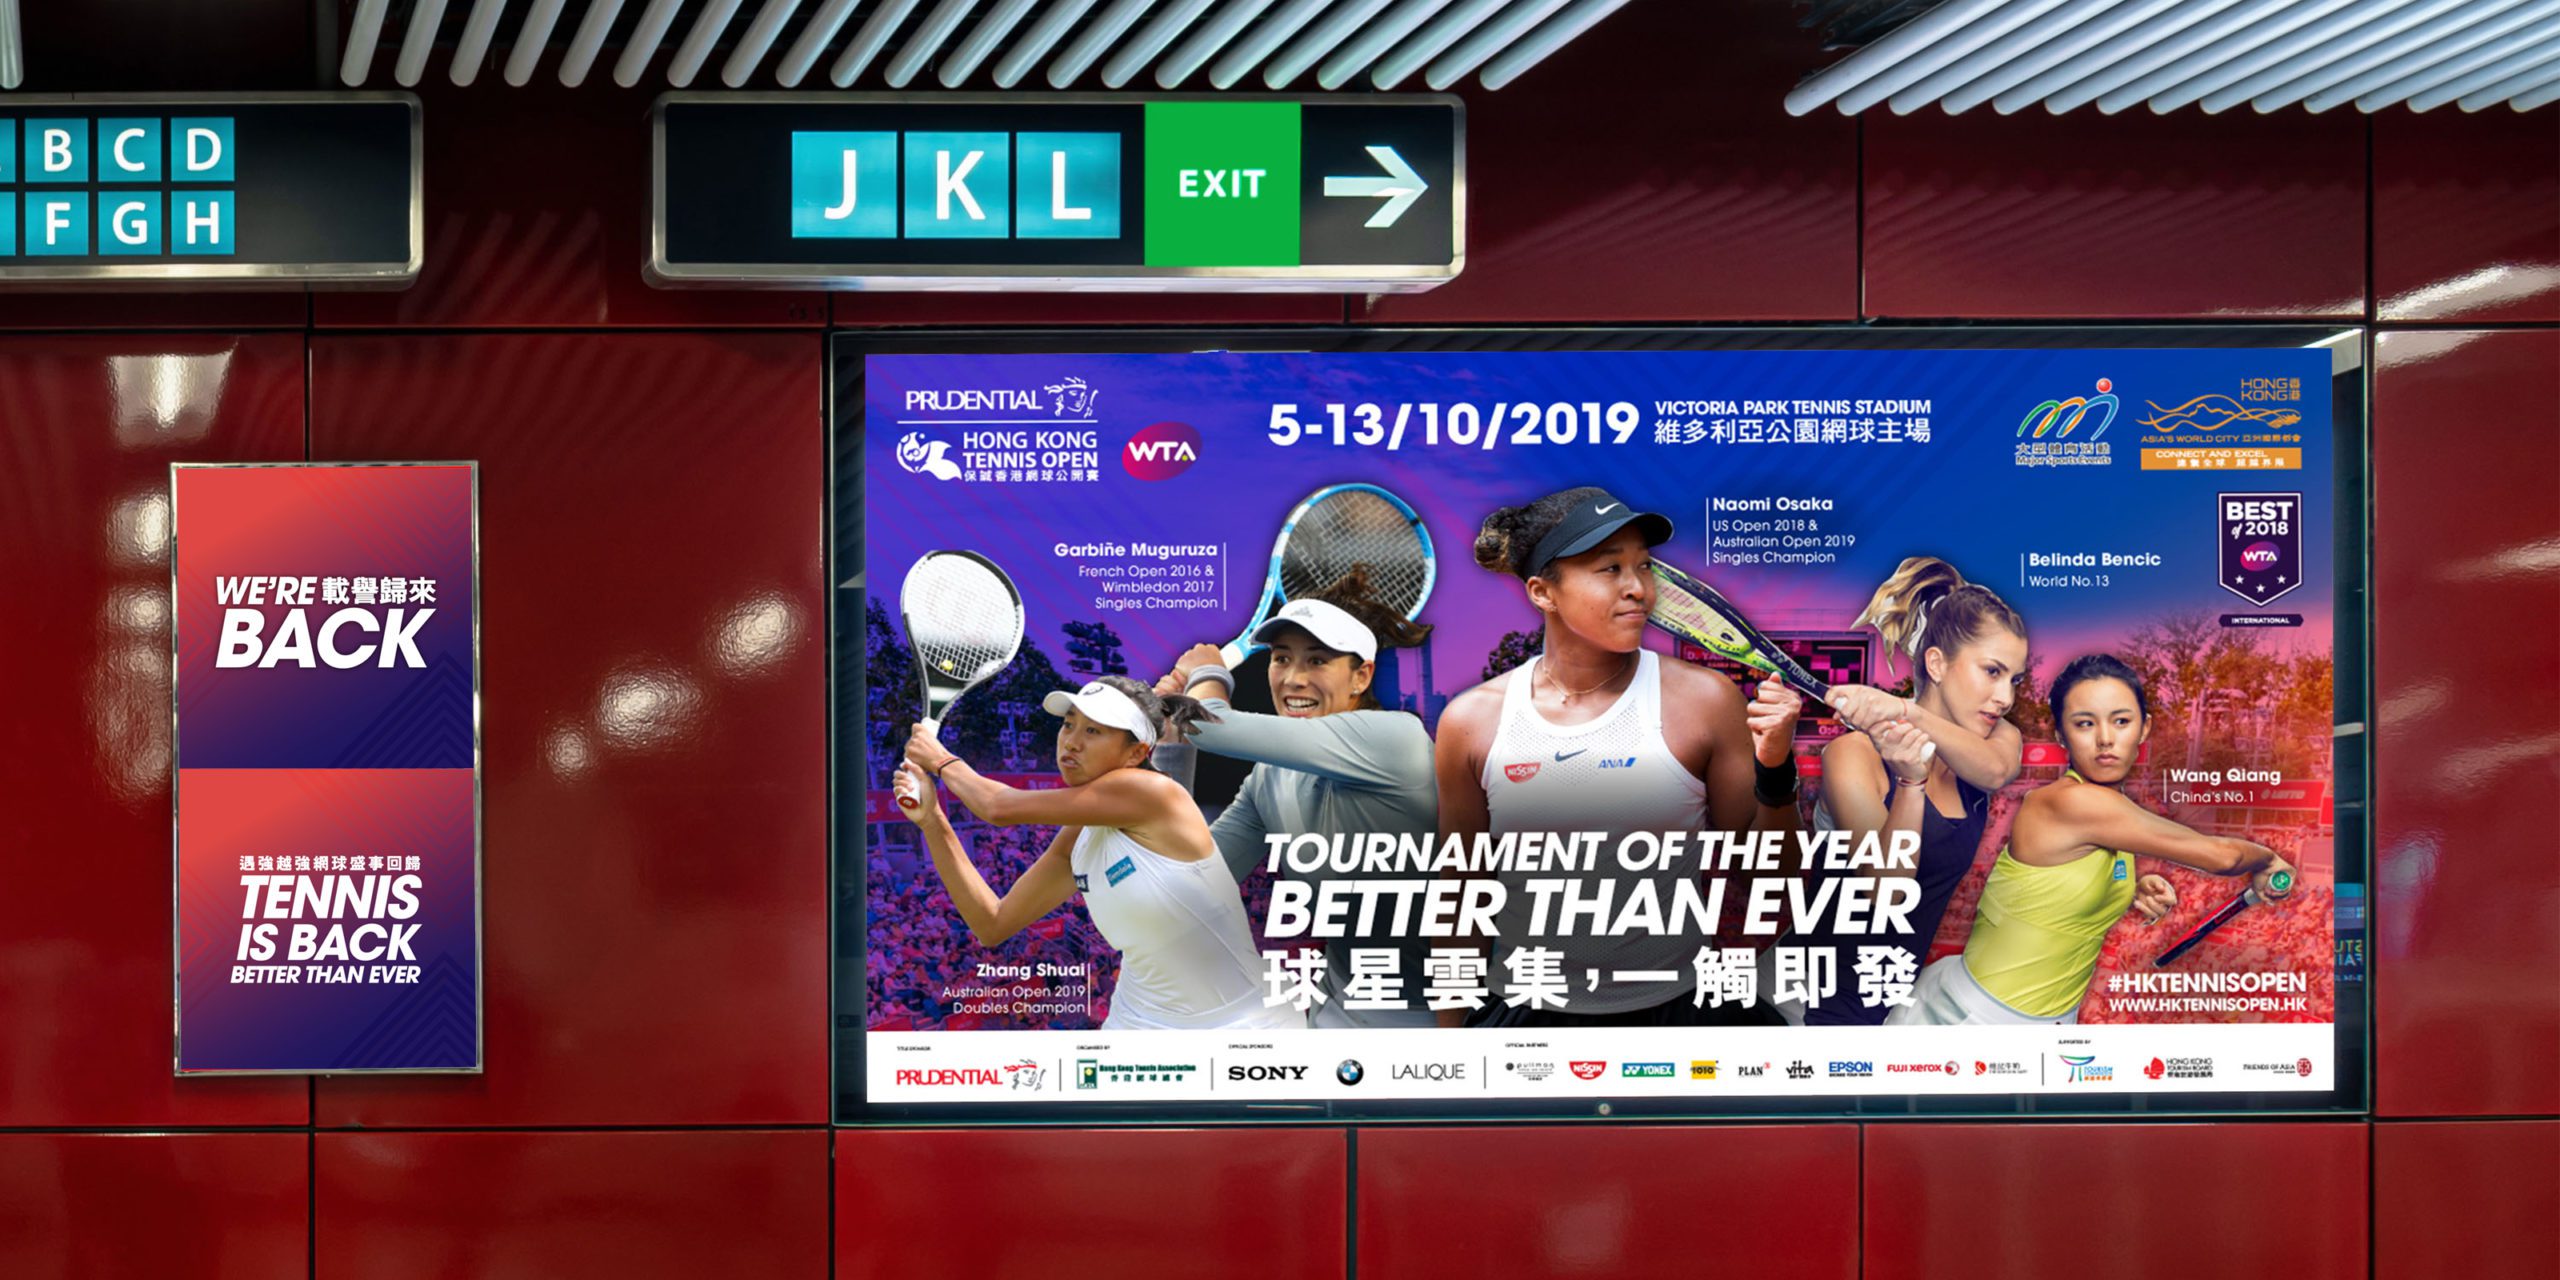 Hong Kong Tennis Open landscape advertisement displayed in Hong Kong MTR station